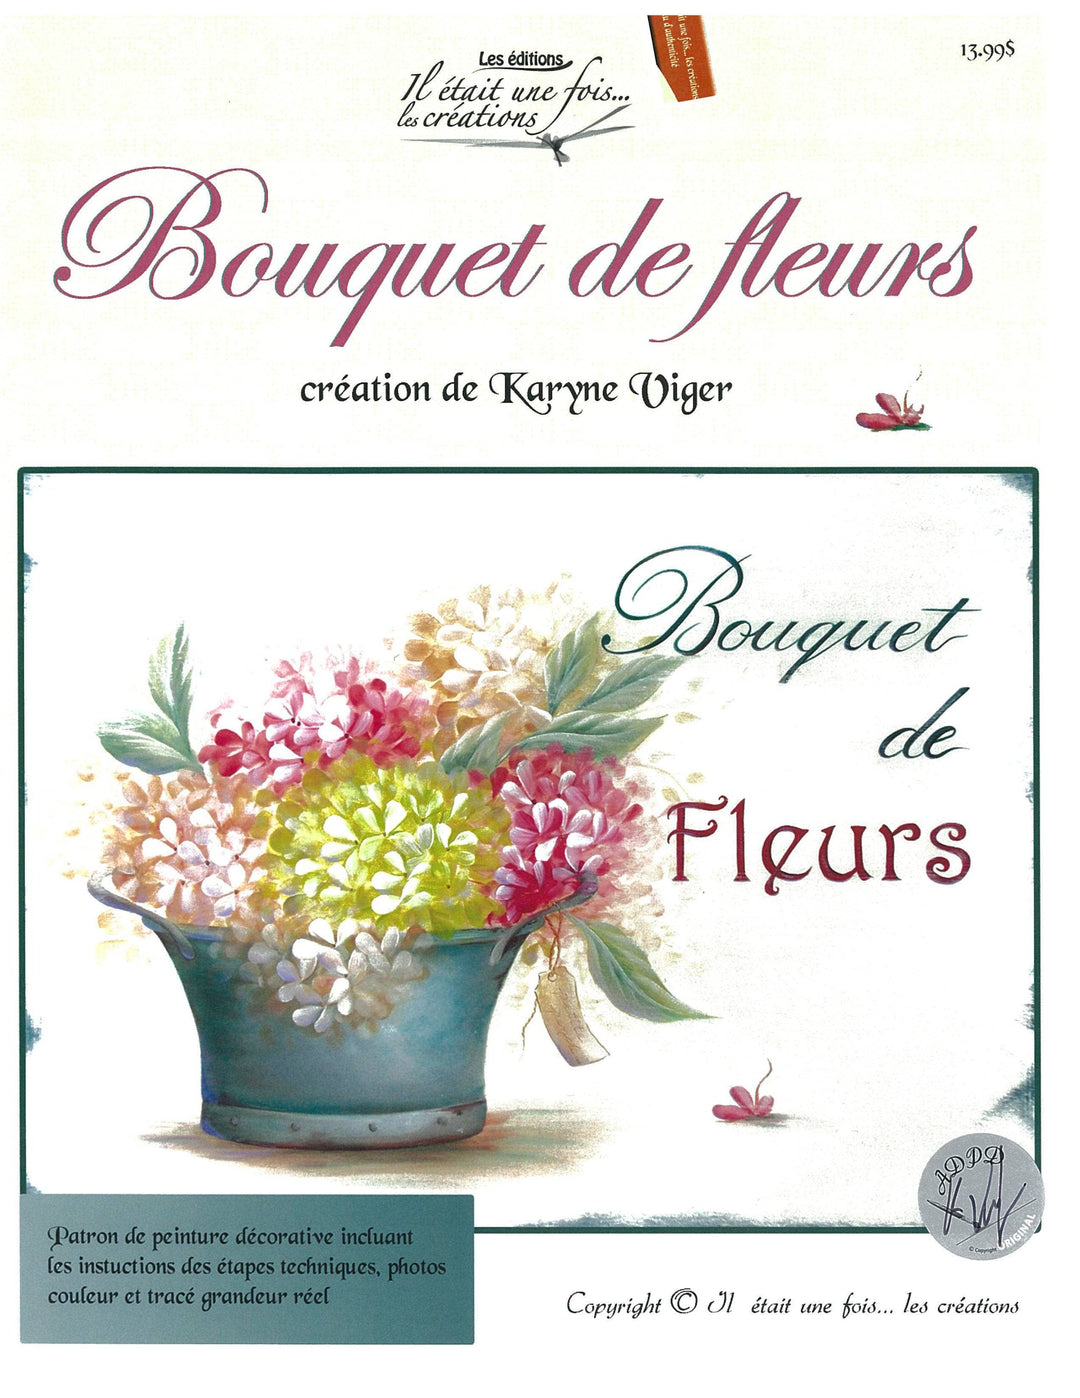 Bouquet de fleur/Karyne Viger